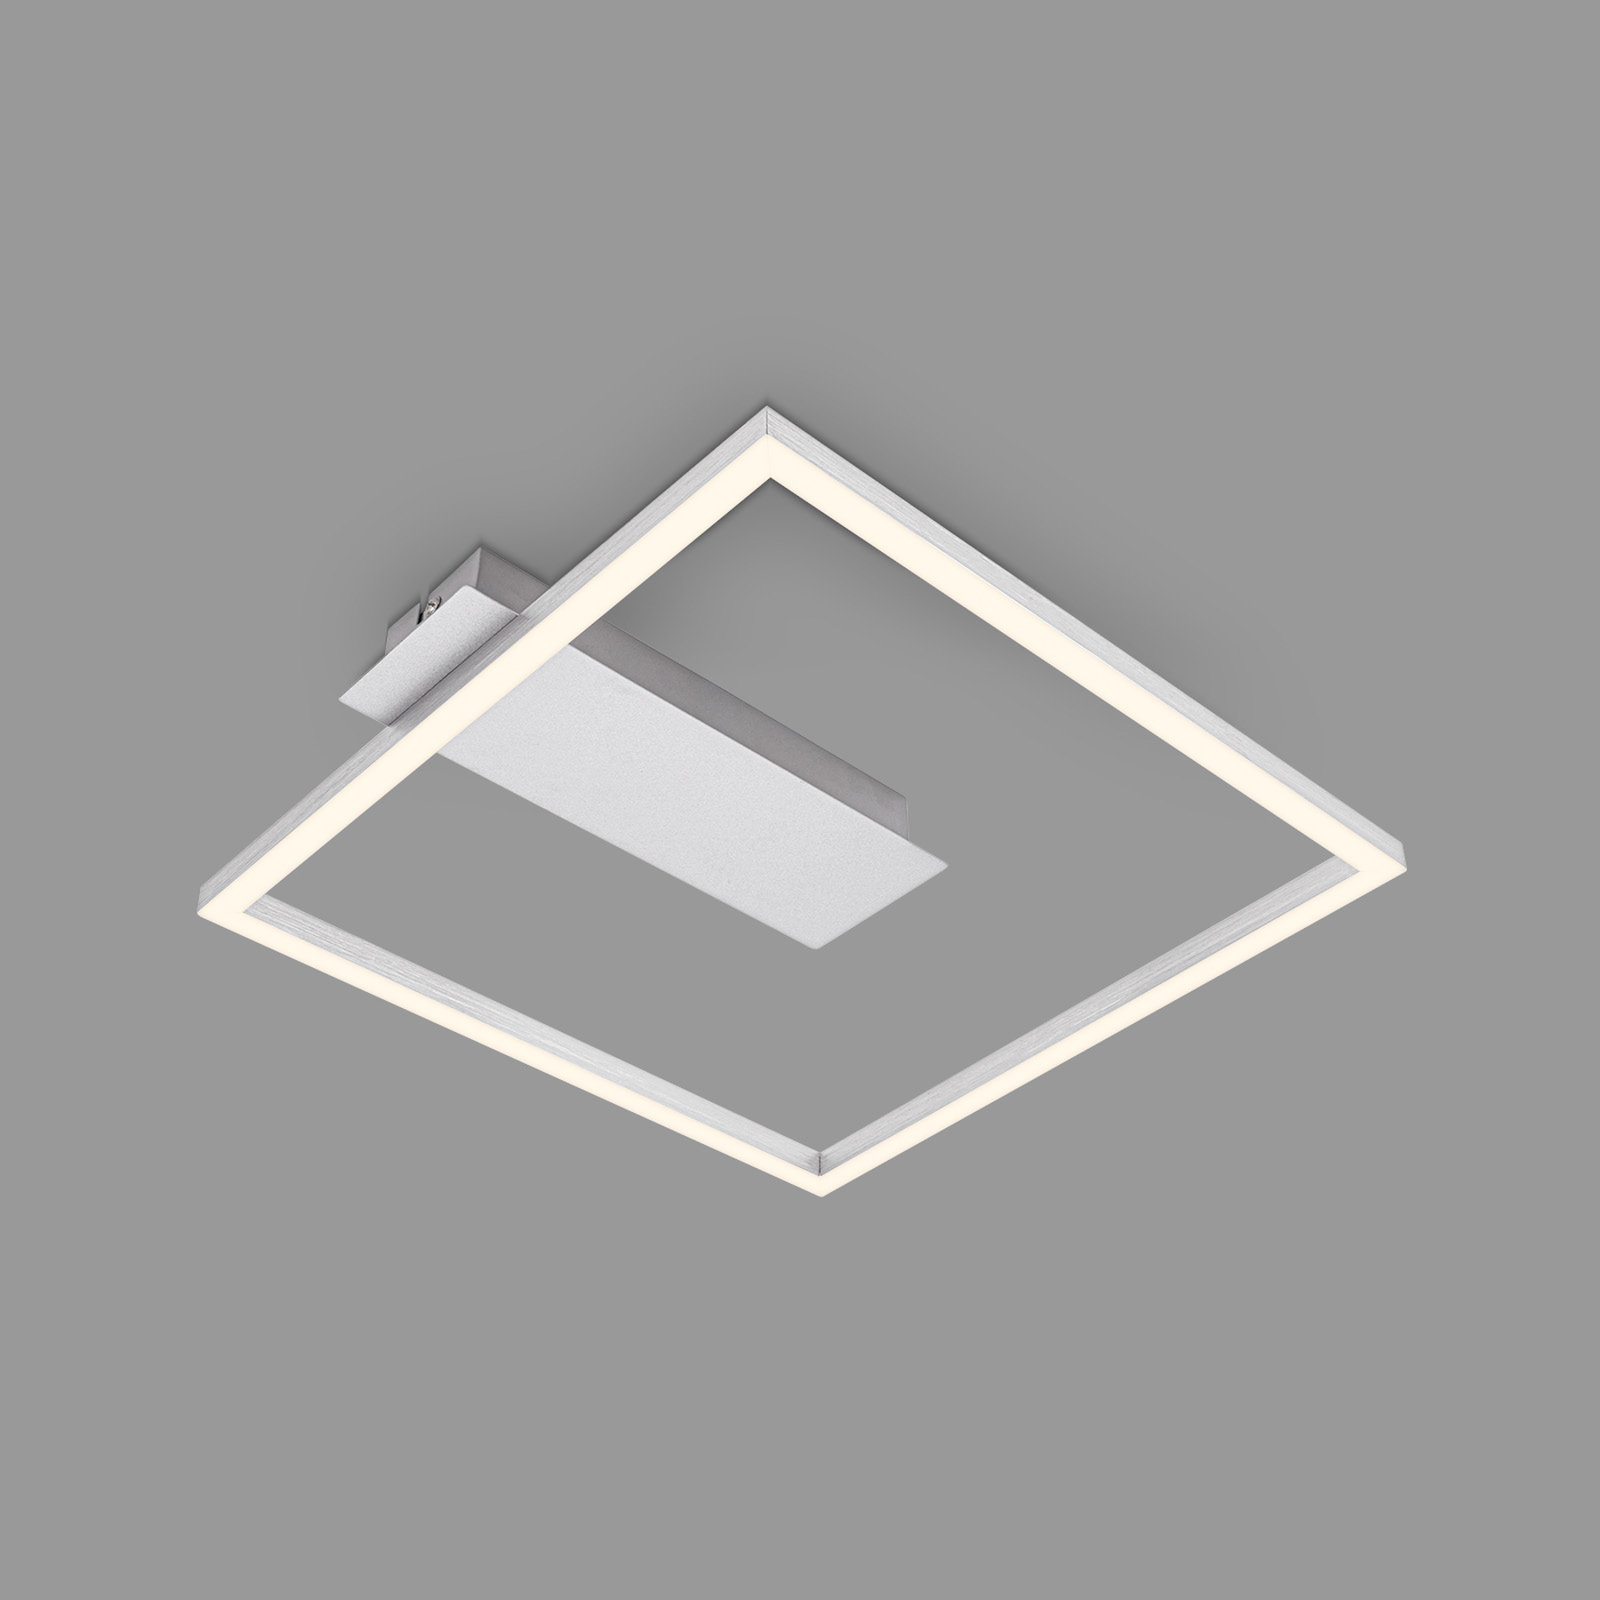 Lampa sufitowa LED 3771 w kształcie ramki, alu